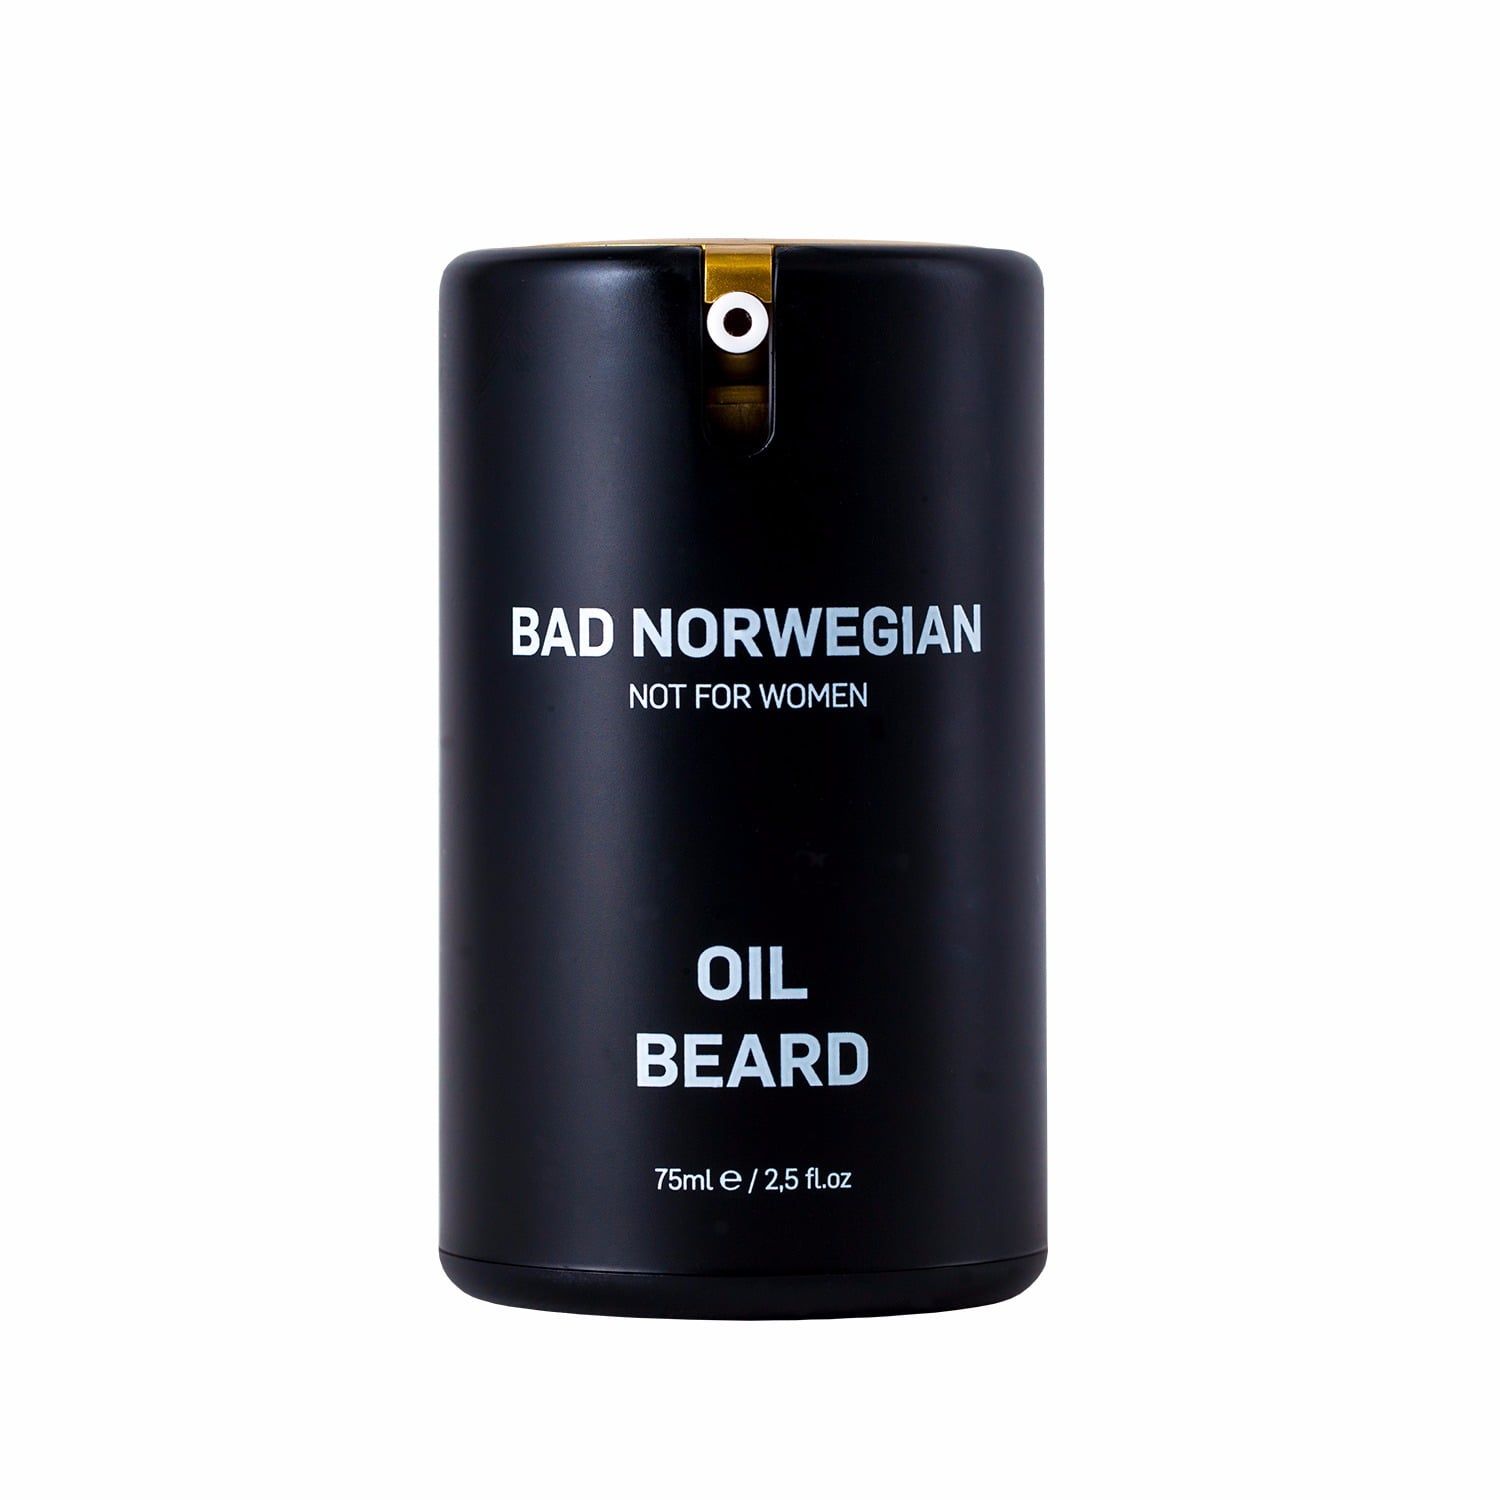 BAD NORWEGIAN - Oil Beard | Wolf & Badger (US)